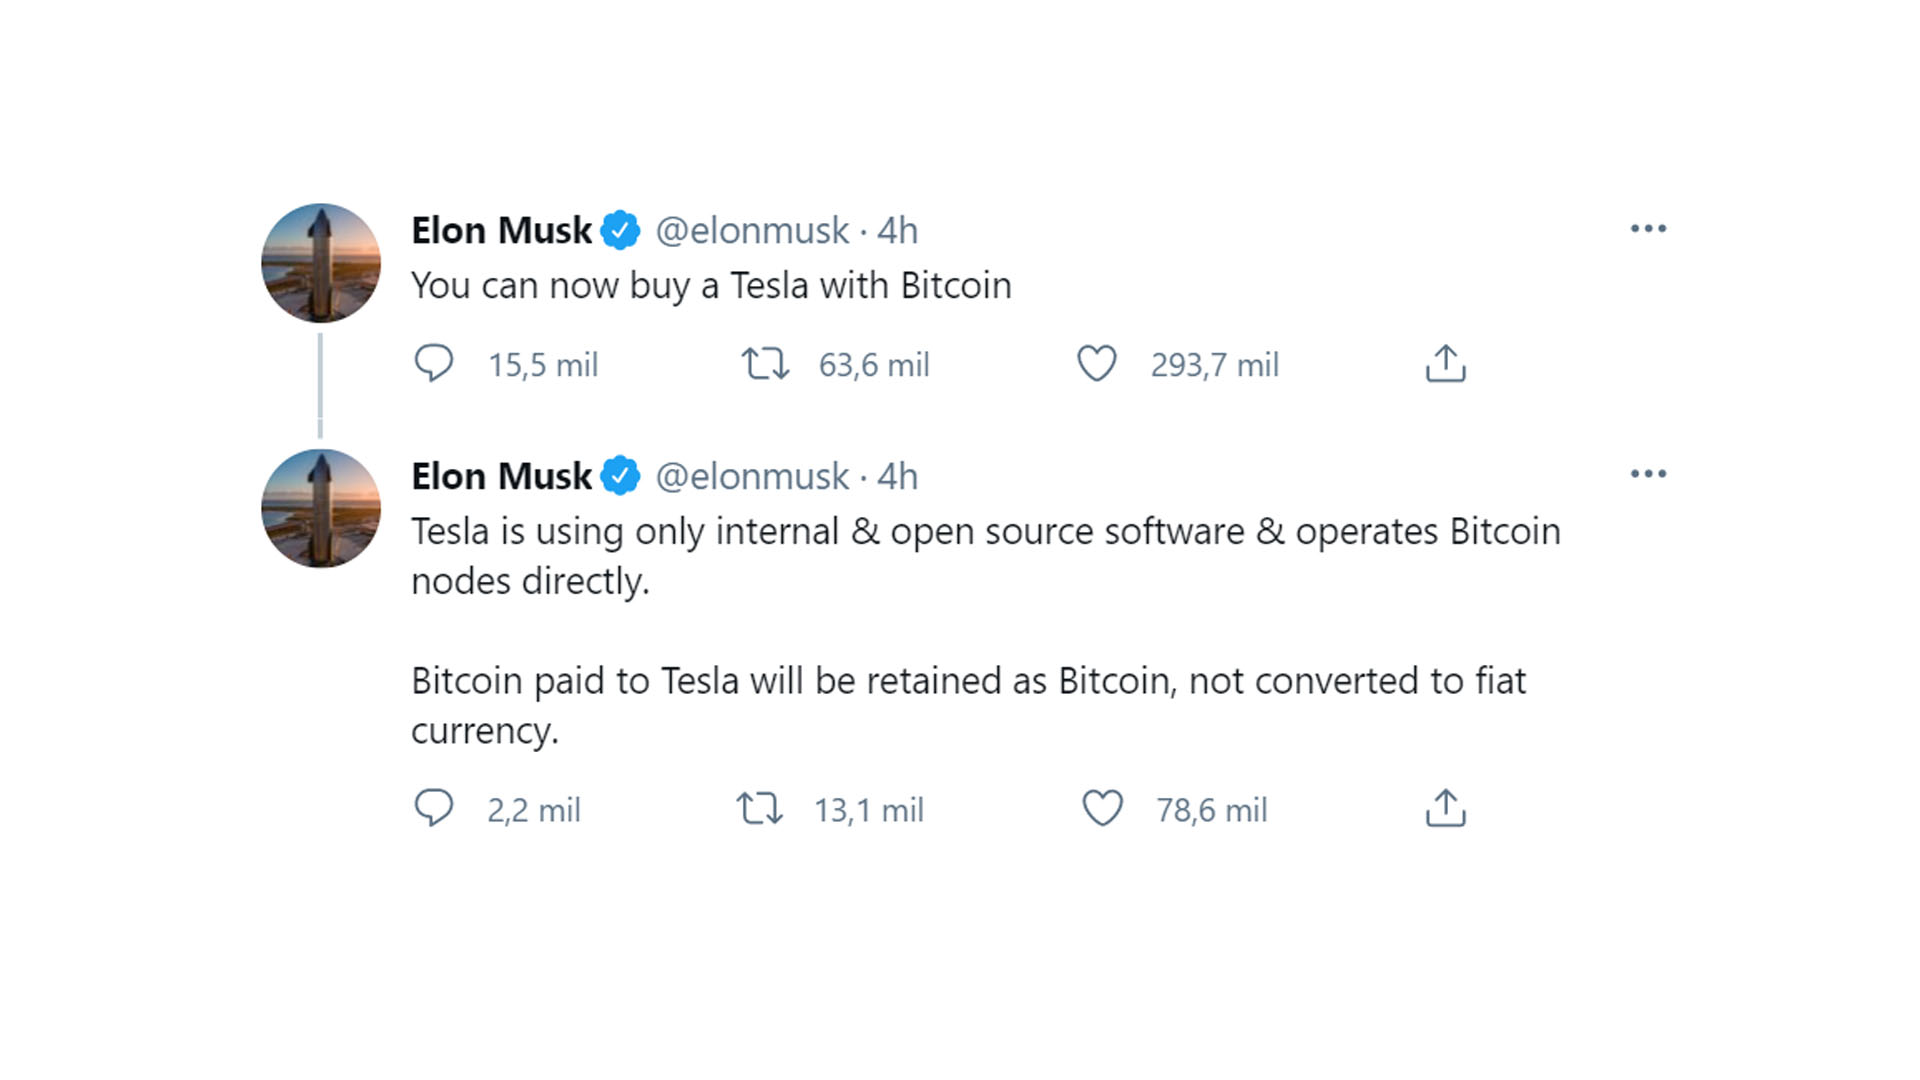 Los tweets de Elon Musk